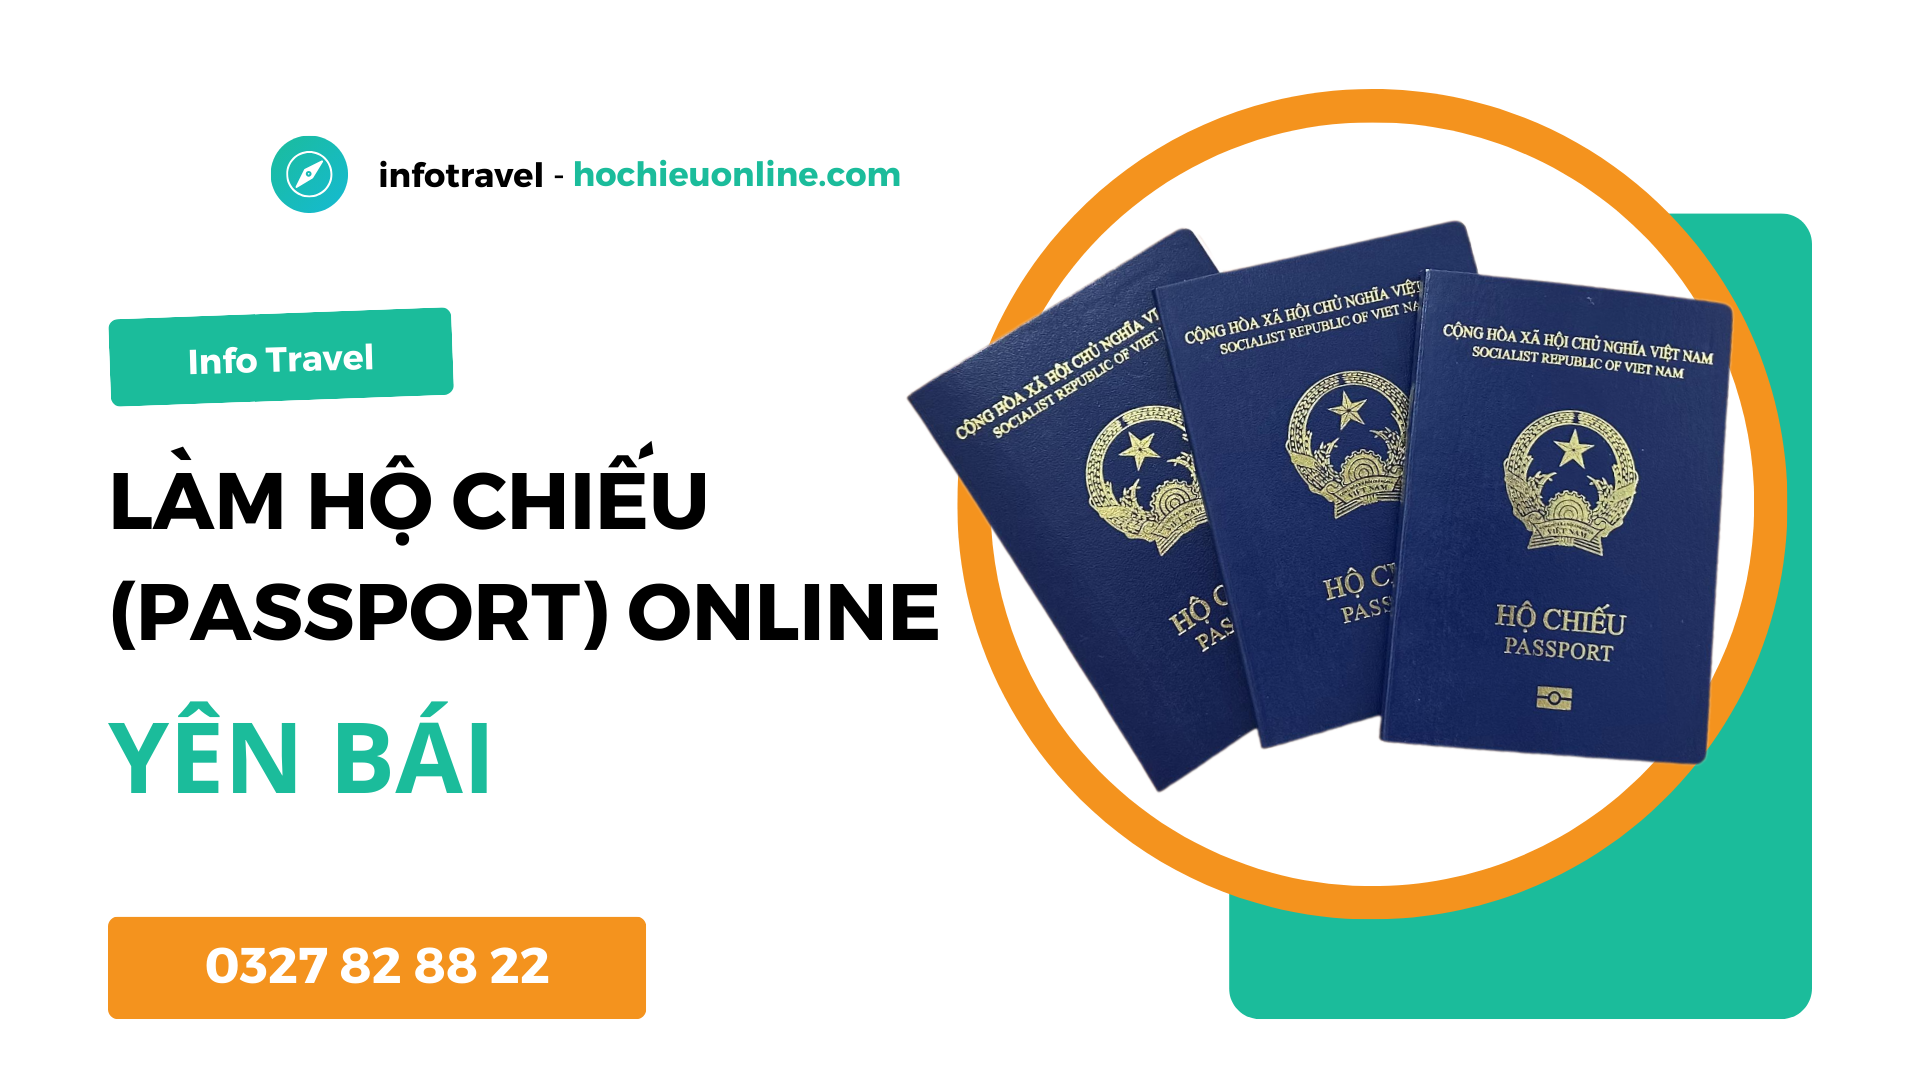 Làm hộ chiếu passport online tại tỉnh Yên Bái